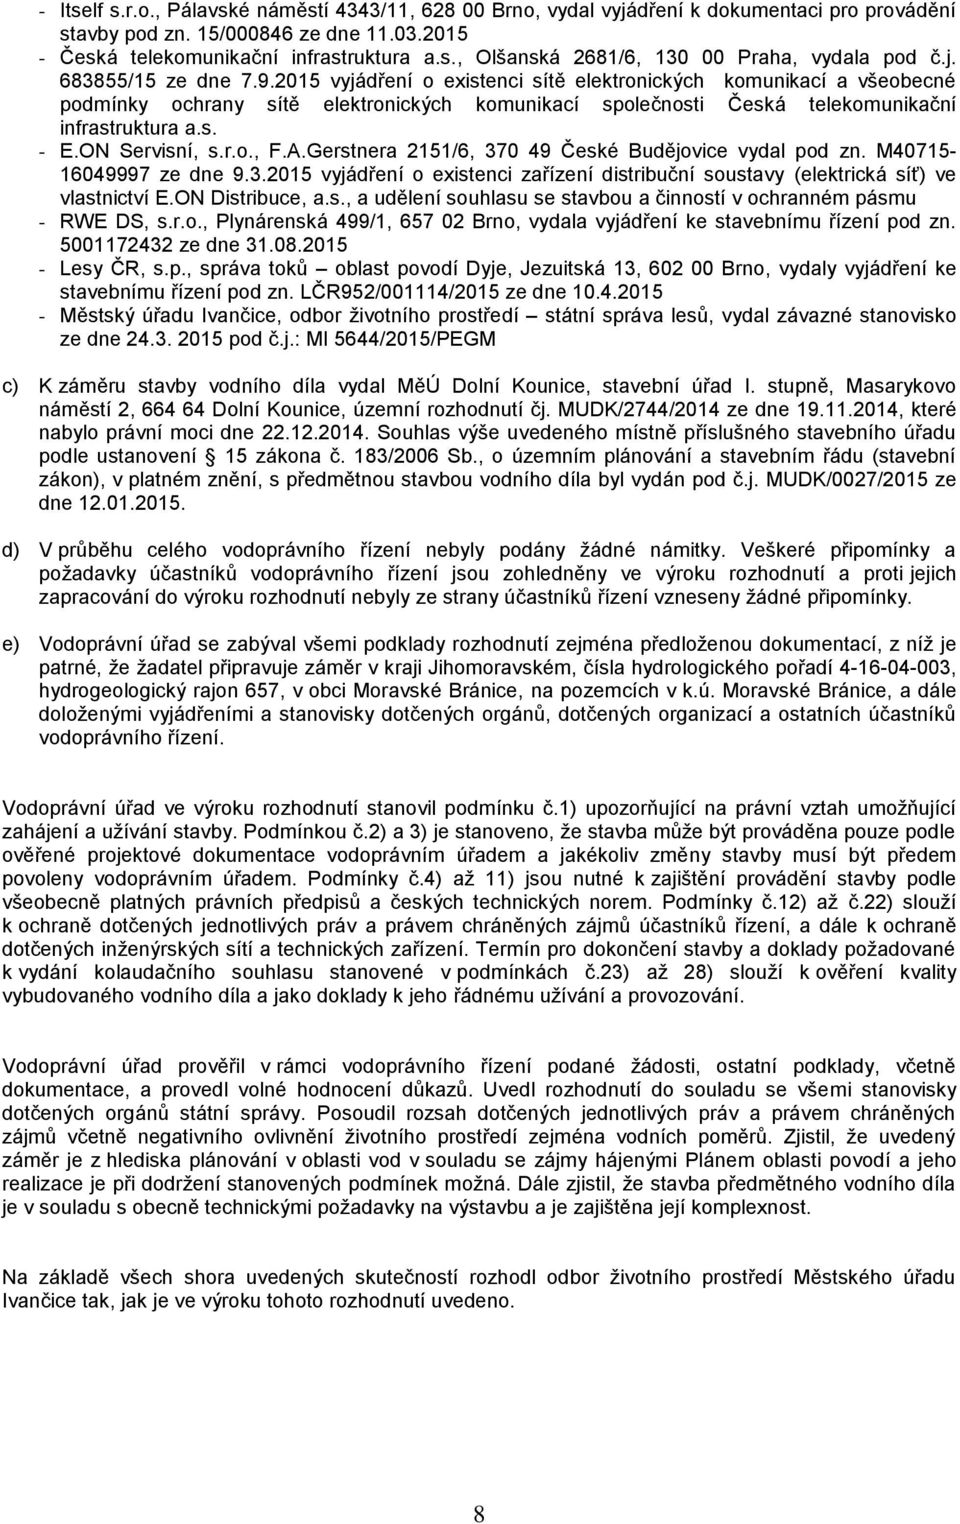 ON Servisní, s.r.o., F.A.Gerstnera 2151/6, 370 49 České Budějovice vydal pod zn. M40715-16049997 ze dne 9.3.2015 vyjádření o existenci zařízení distribuční soustavy (elektrická síť) ve vlastnictví E.